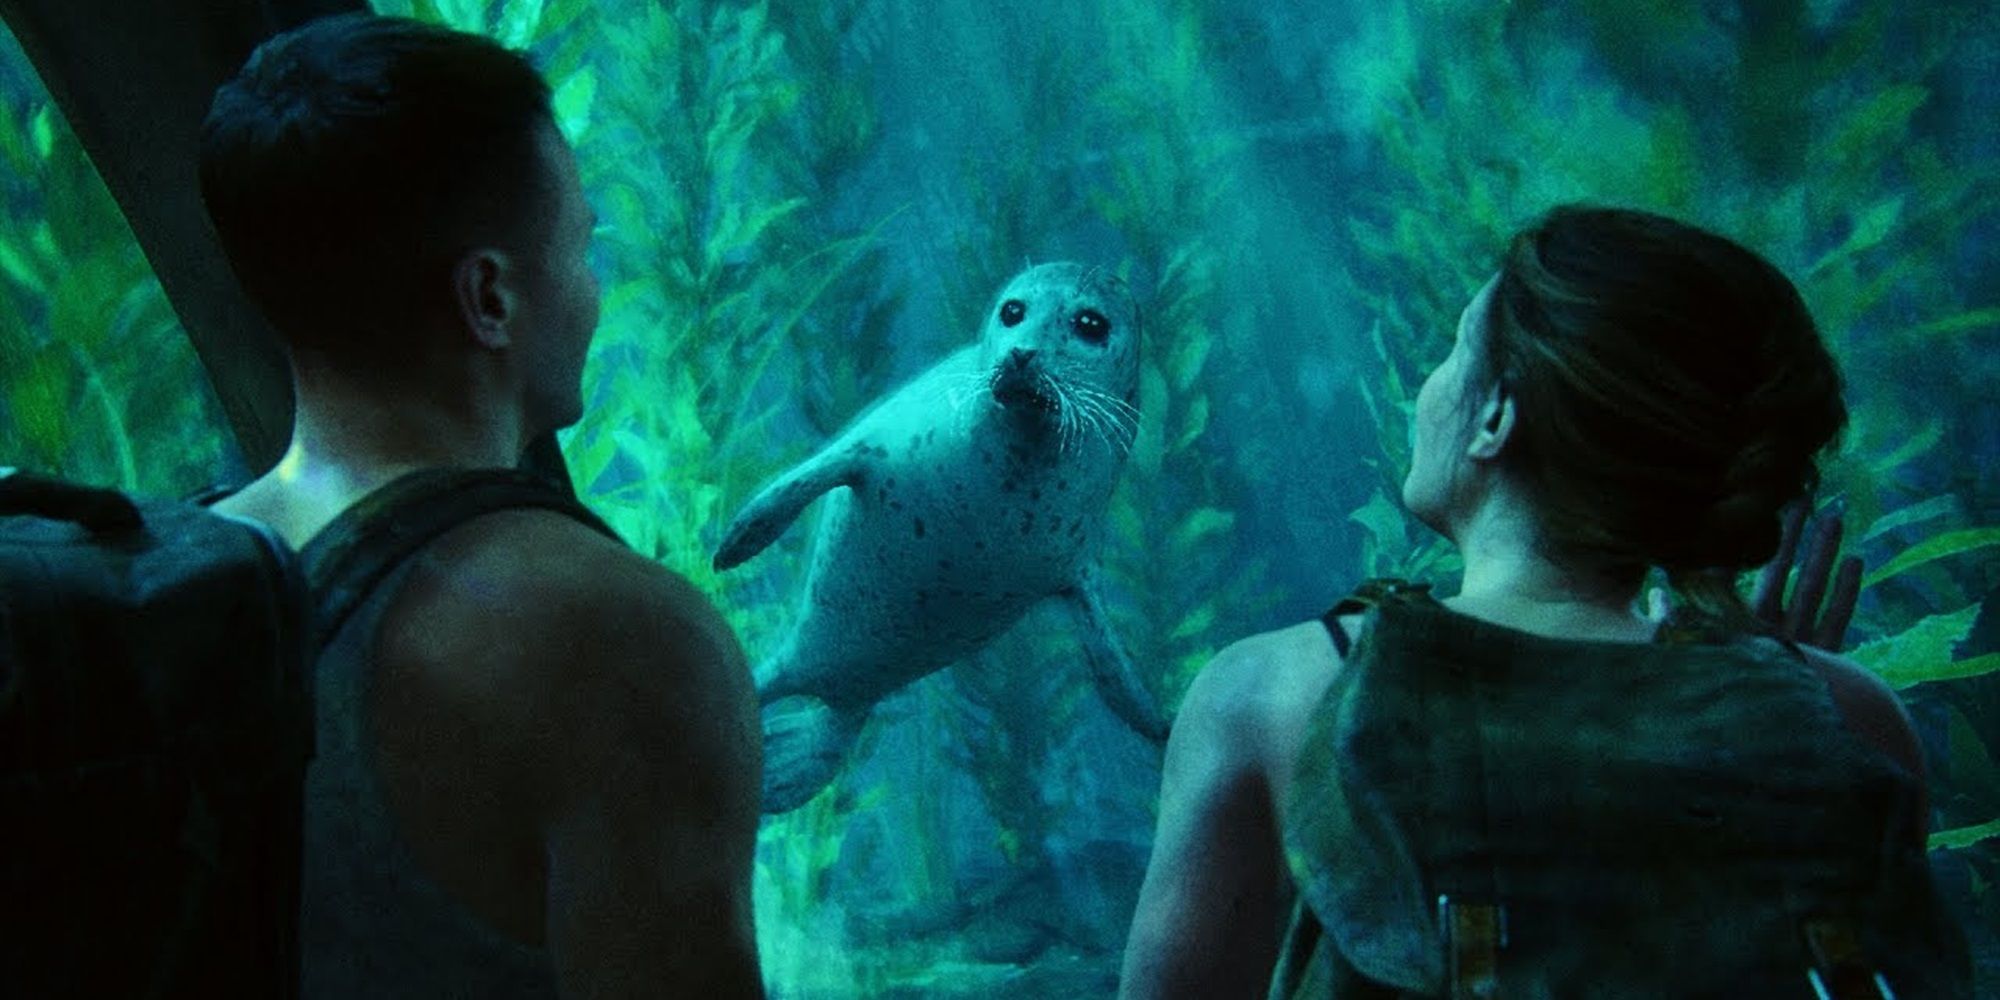 Abby e Owen veem uma foca no aquário em The Last of Us Part II